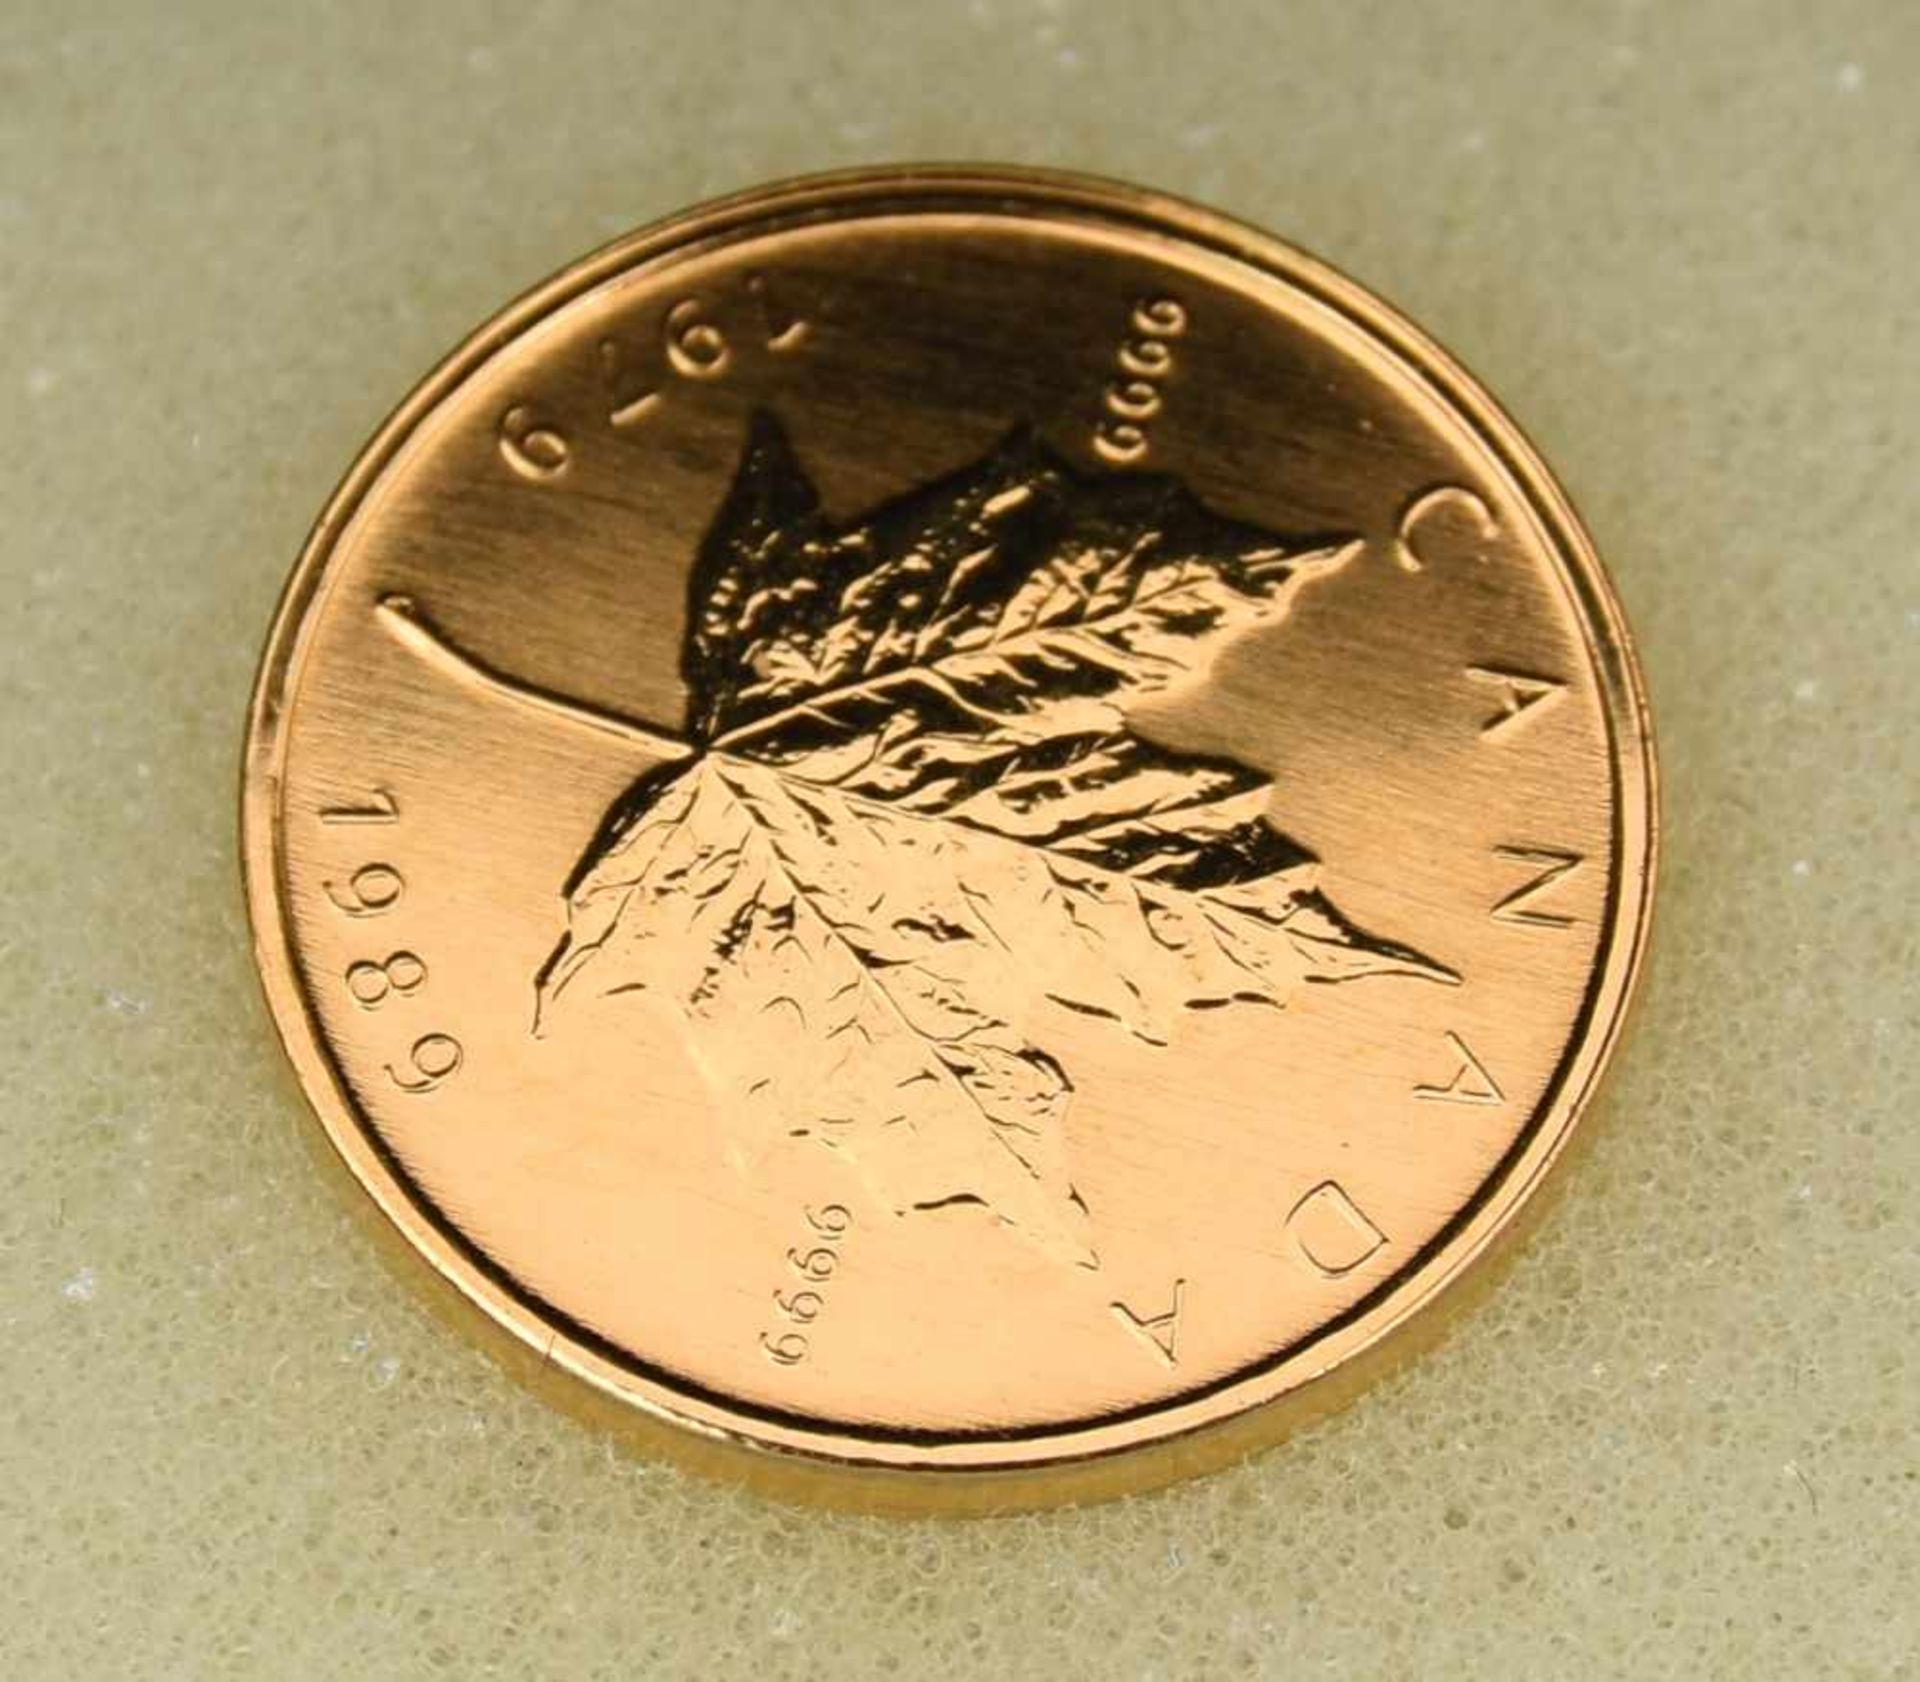 MÜNZANHÄNGER, Die kleinsten Goldmünzen der Welt, mit 14 Karat Kette, 20. Jhd. (13)1x Münzanhänger - Bild 3 aus 6